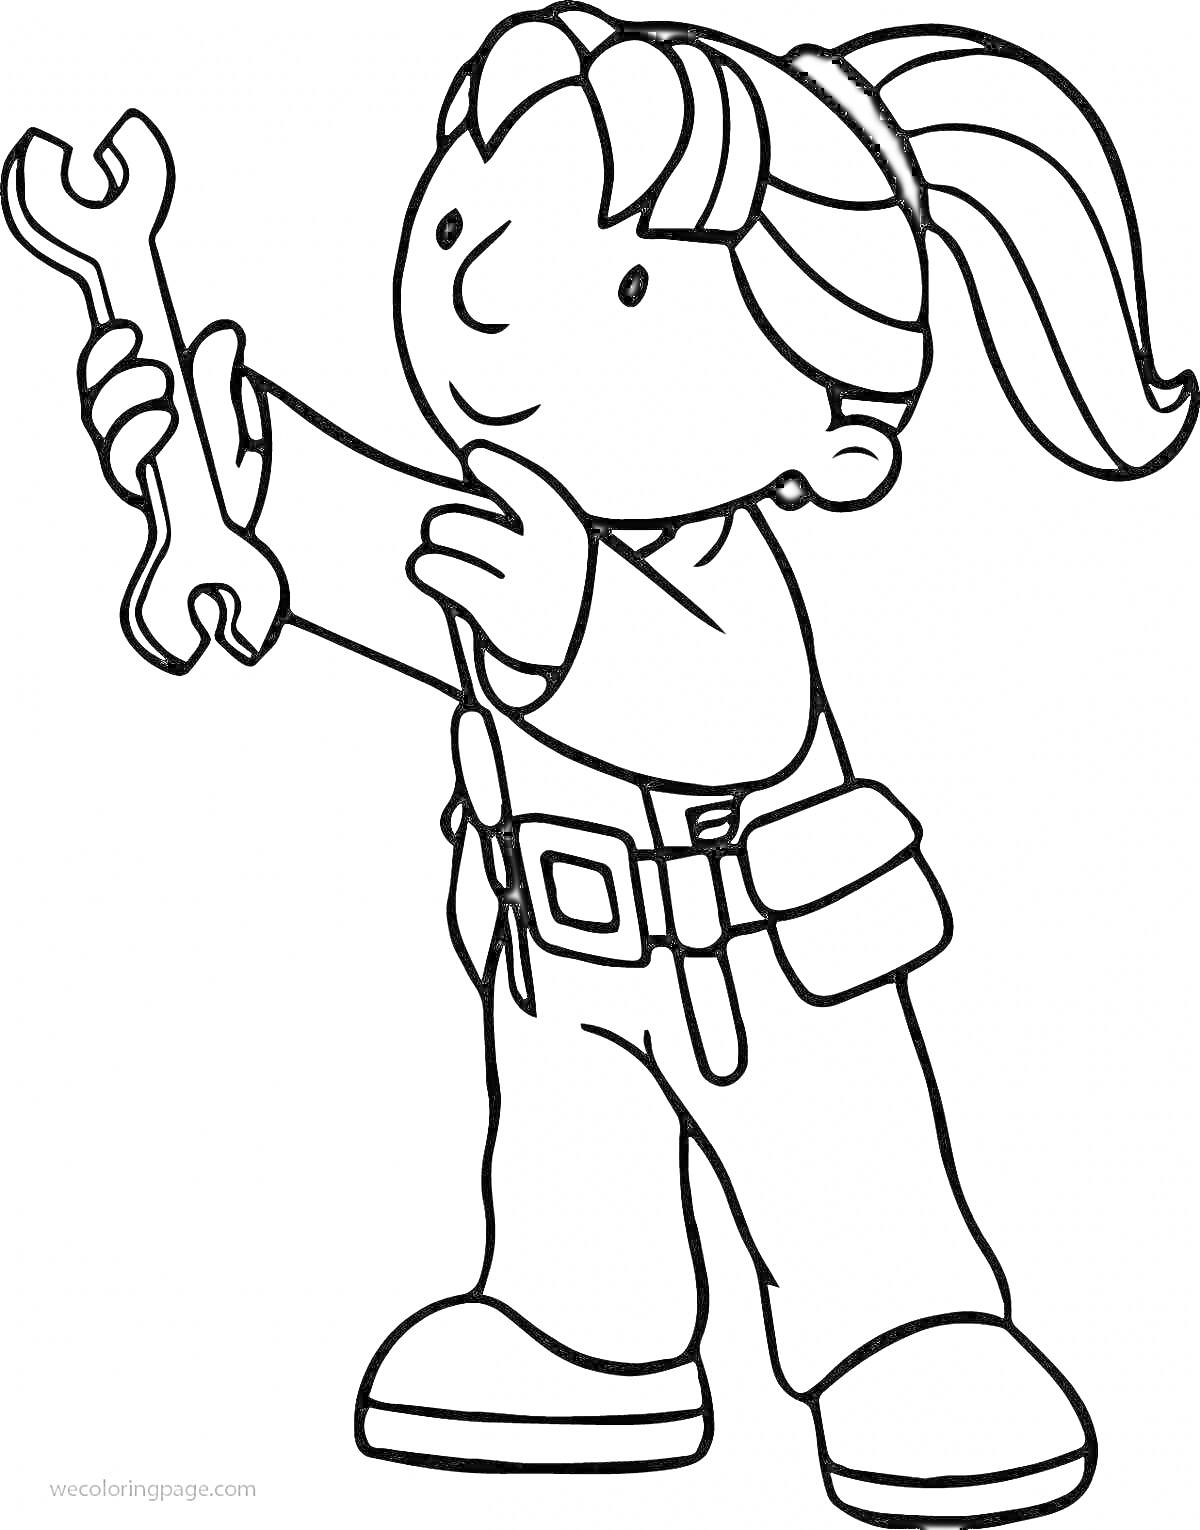 Раскраска Девочка-маляр с гаечным ключом в руках, ремень с инструментами на поясе